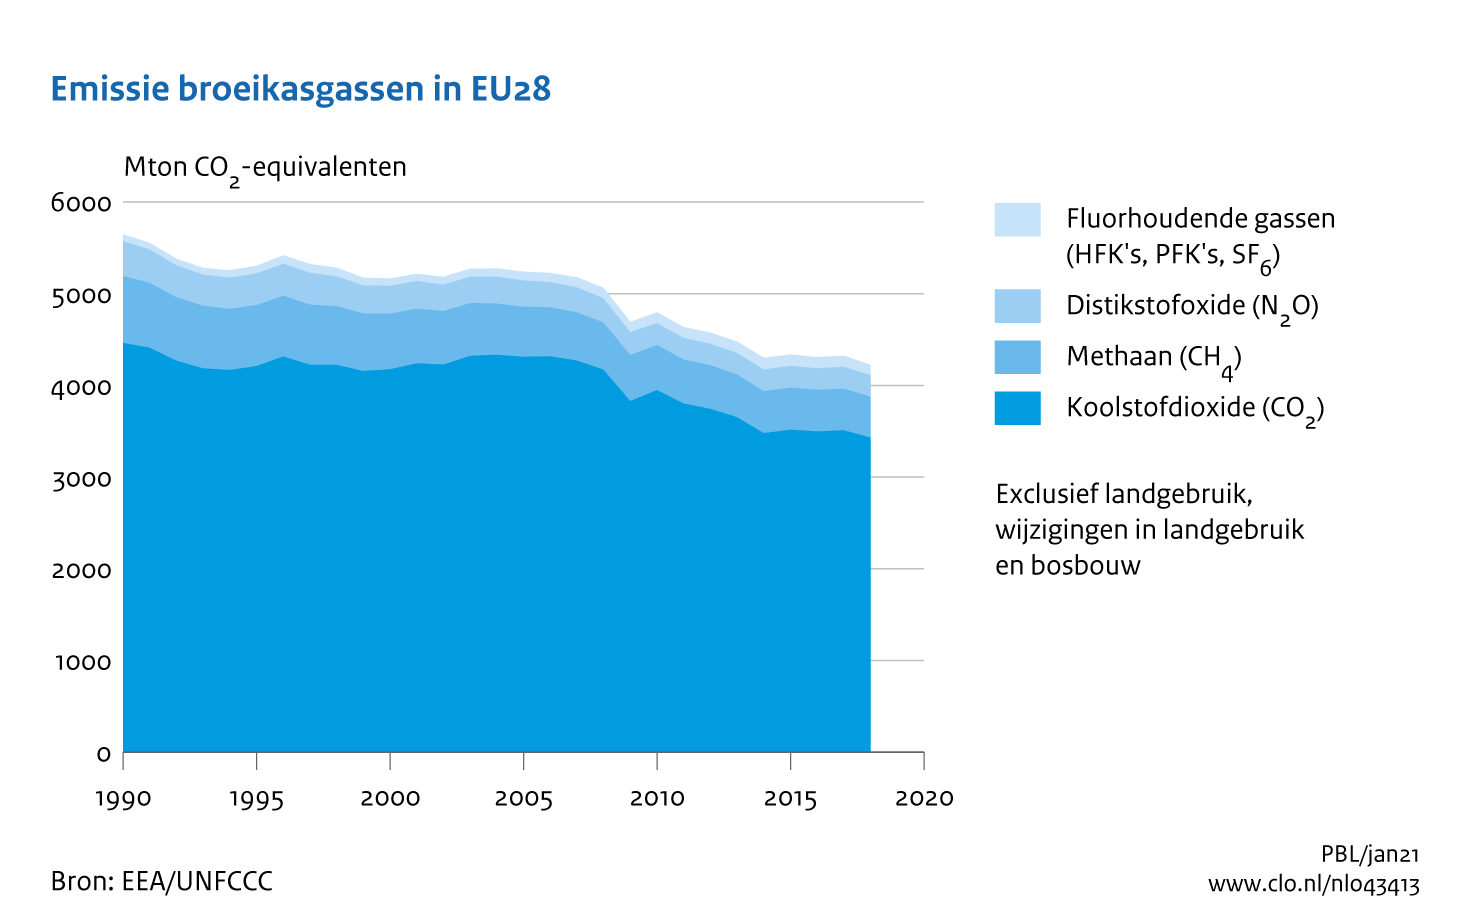 Figuur  Uitstoot broeikasgassen in Europa met 25% gedaald sinds 1990. In de rest van de tekst wordt deze figuur uitgebreider uitgelegd.